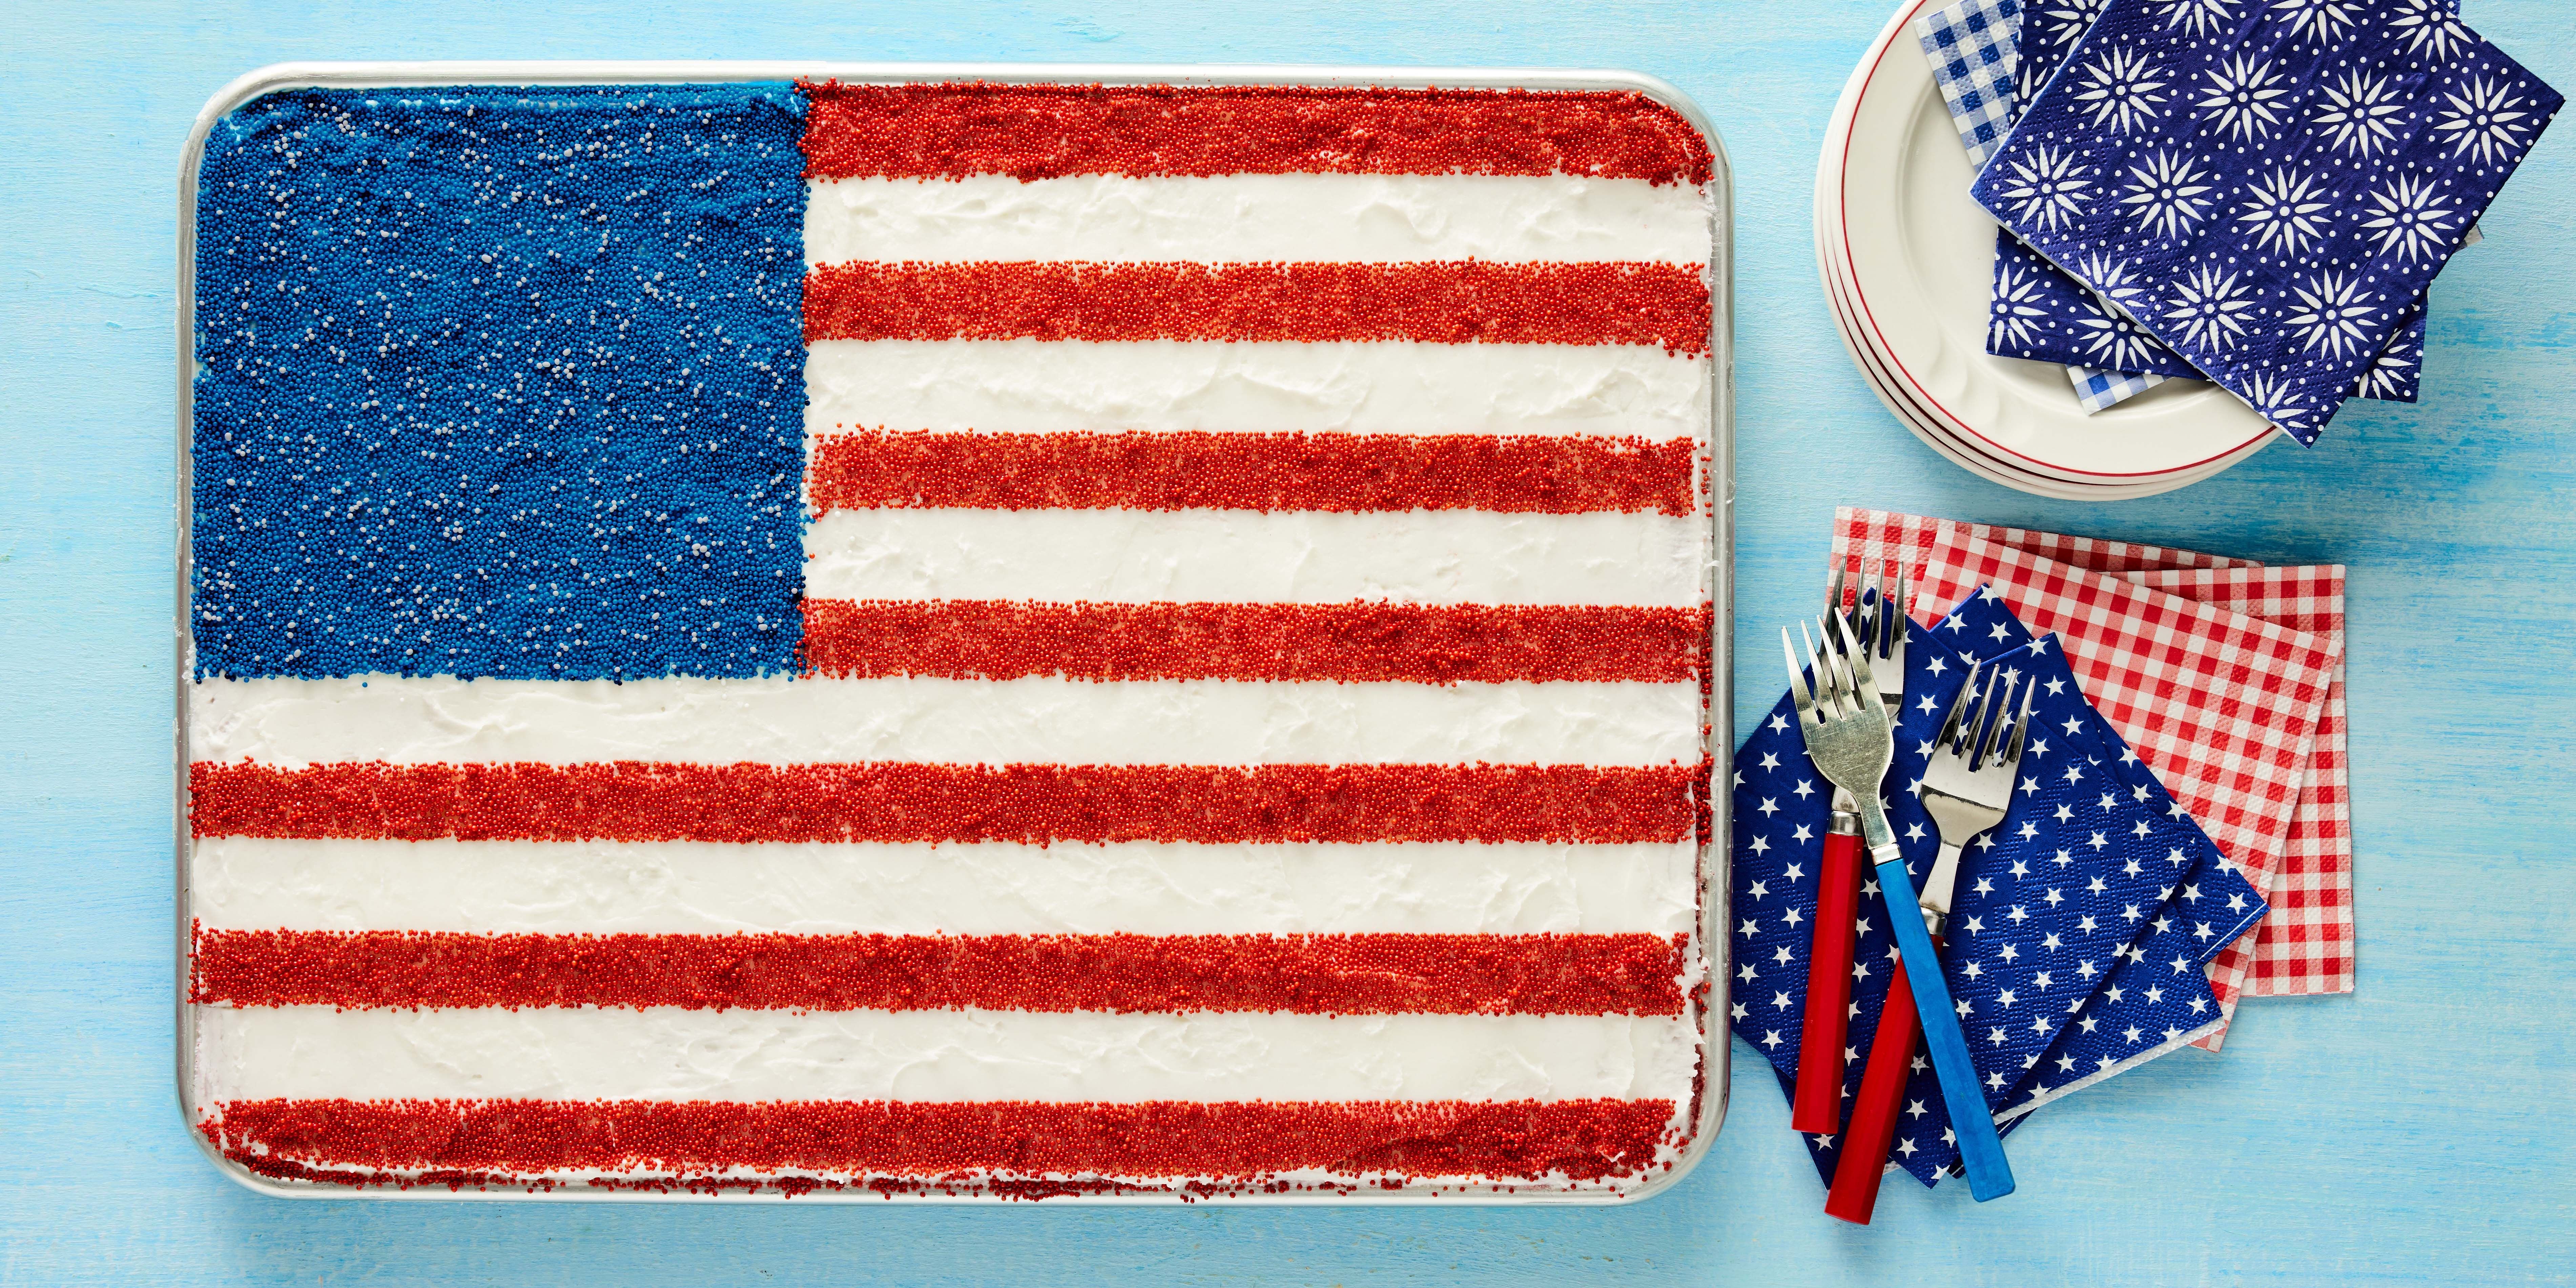 Flags cake | Flag cake, Nautical cake, Cake